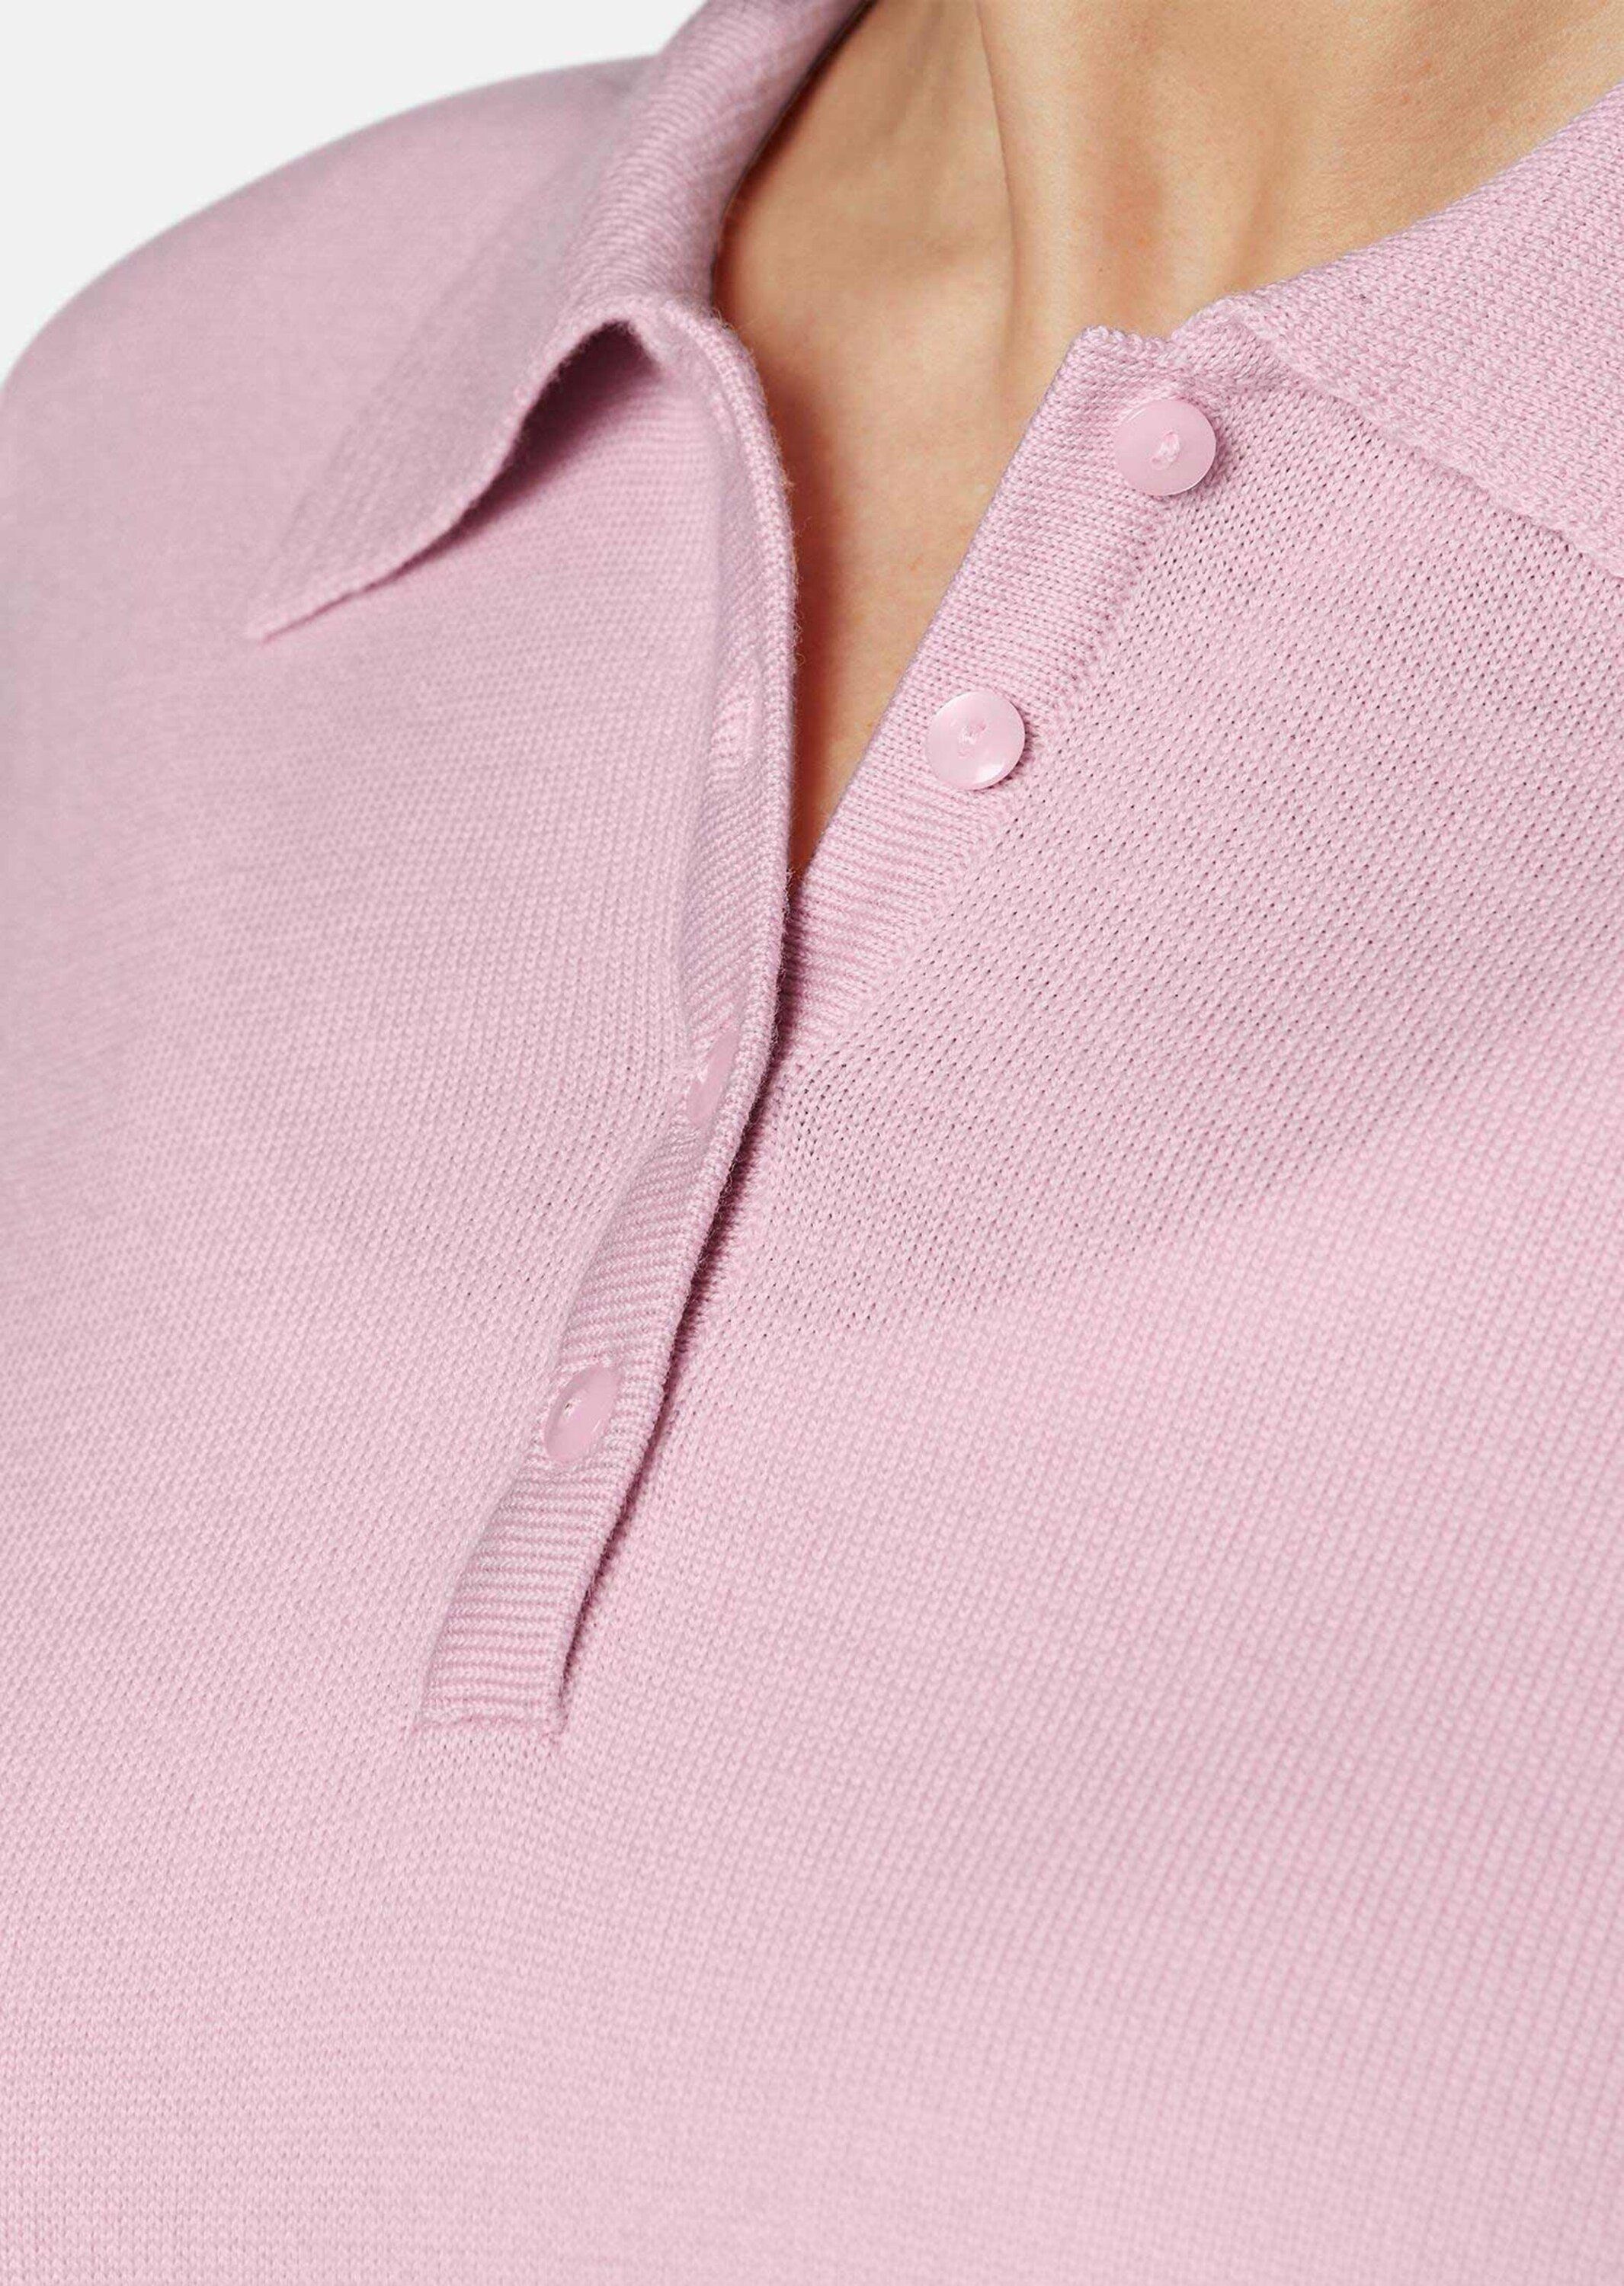 GOLDNER Pullover in Qualität hochwertiger rosa Strickpullover